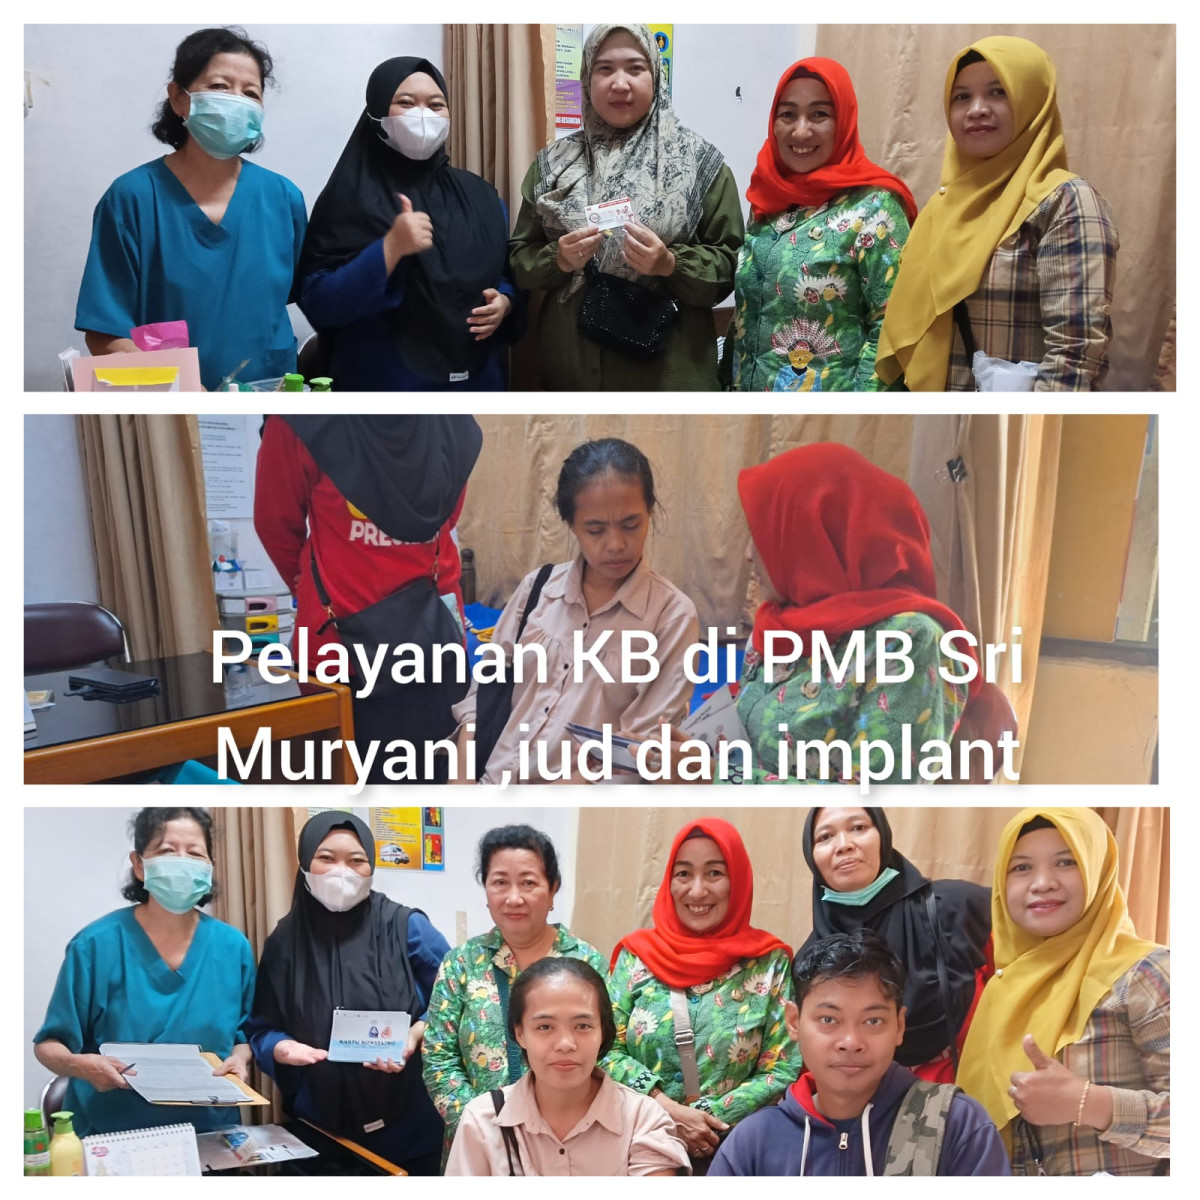 Pemasangan IUD dan Implant di PMB Sri Muryani